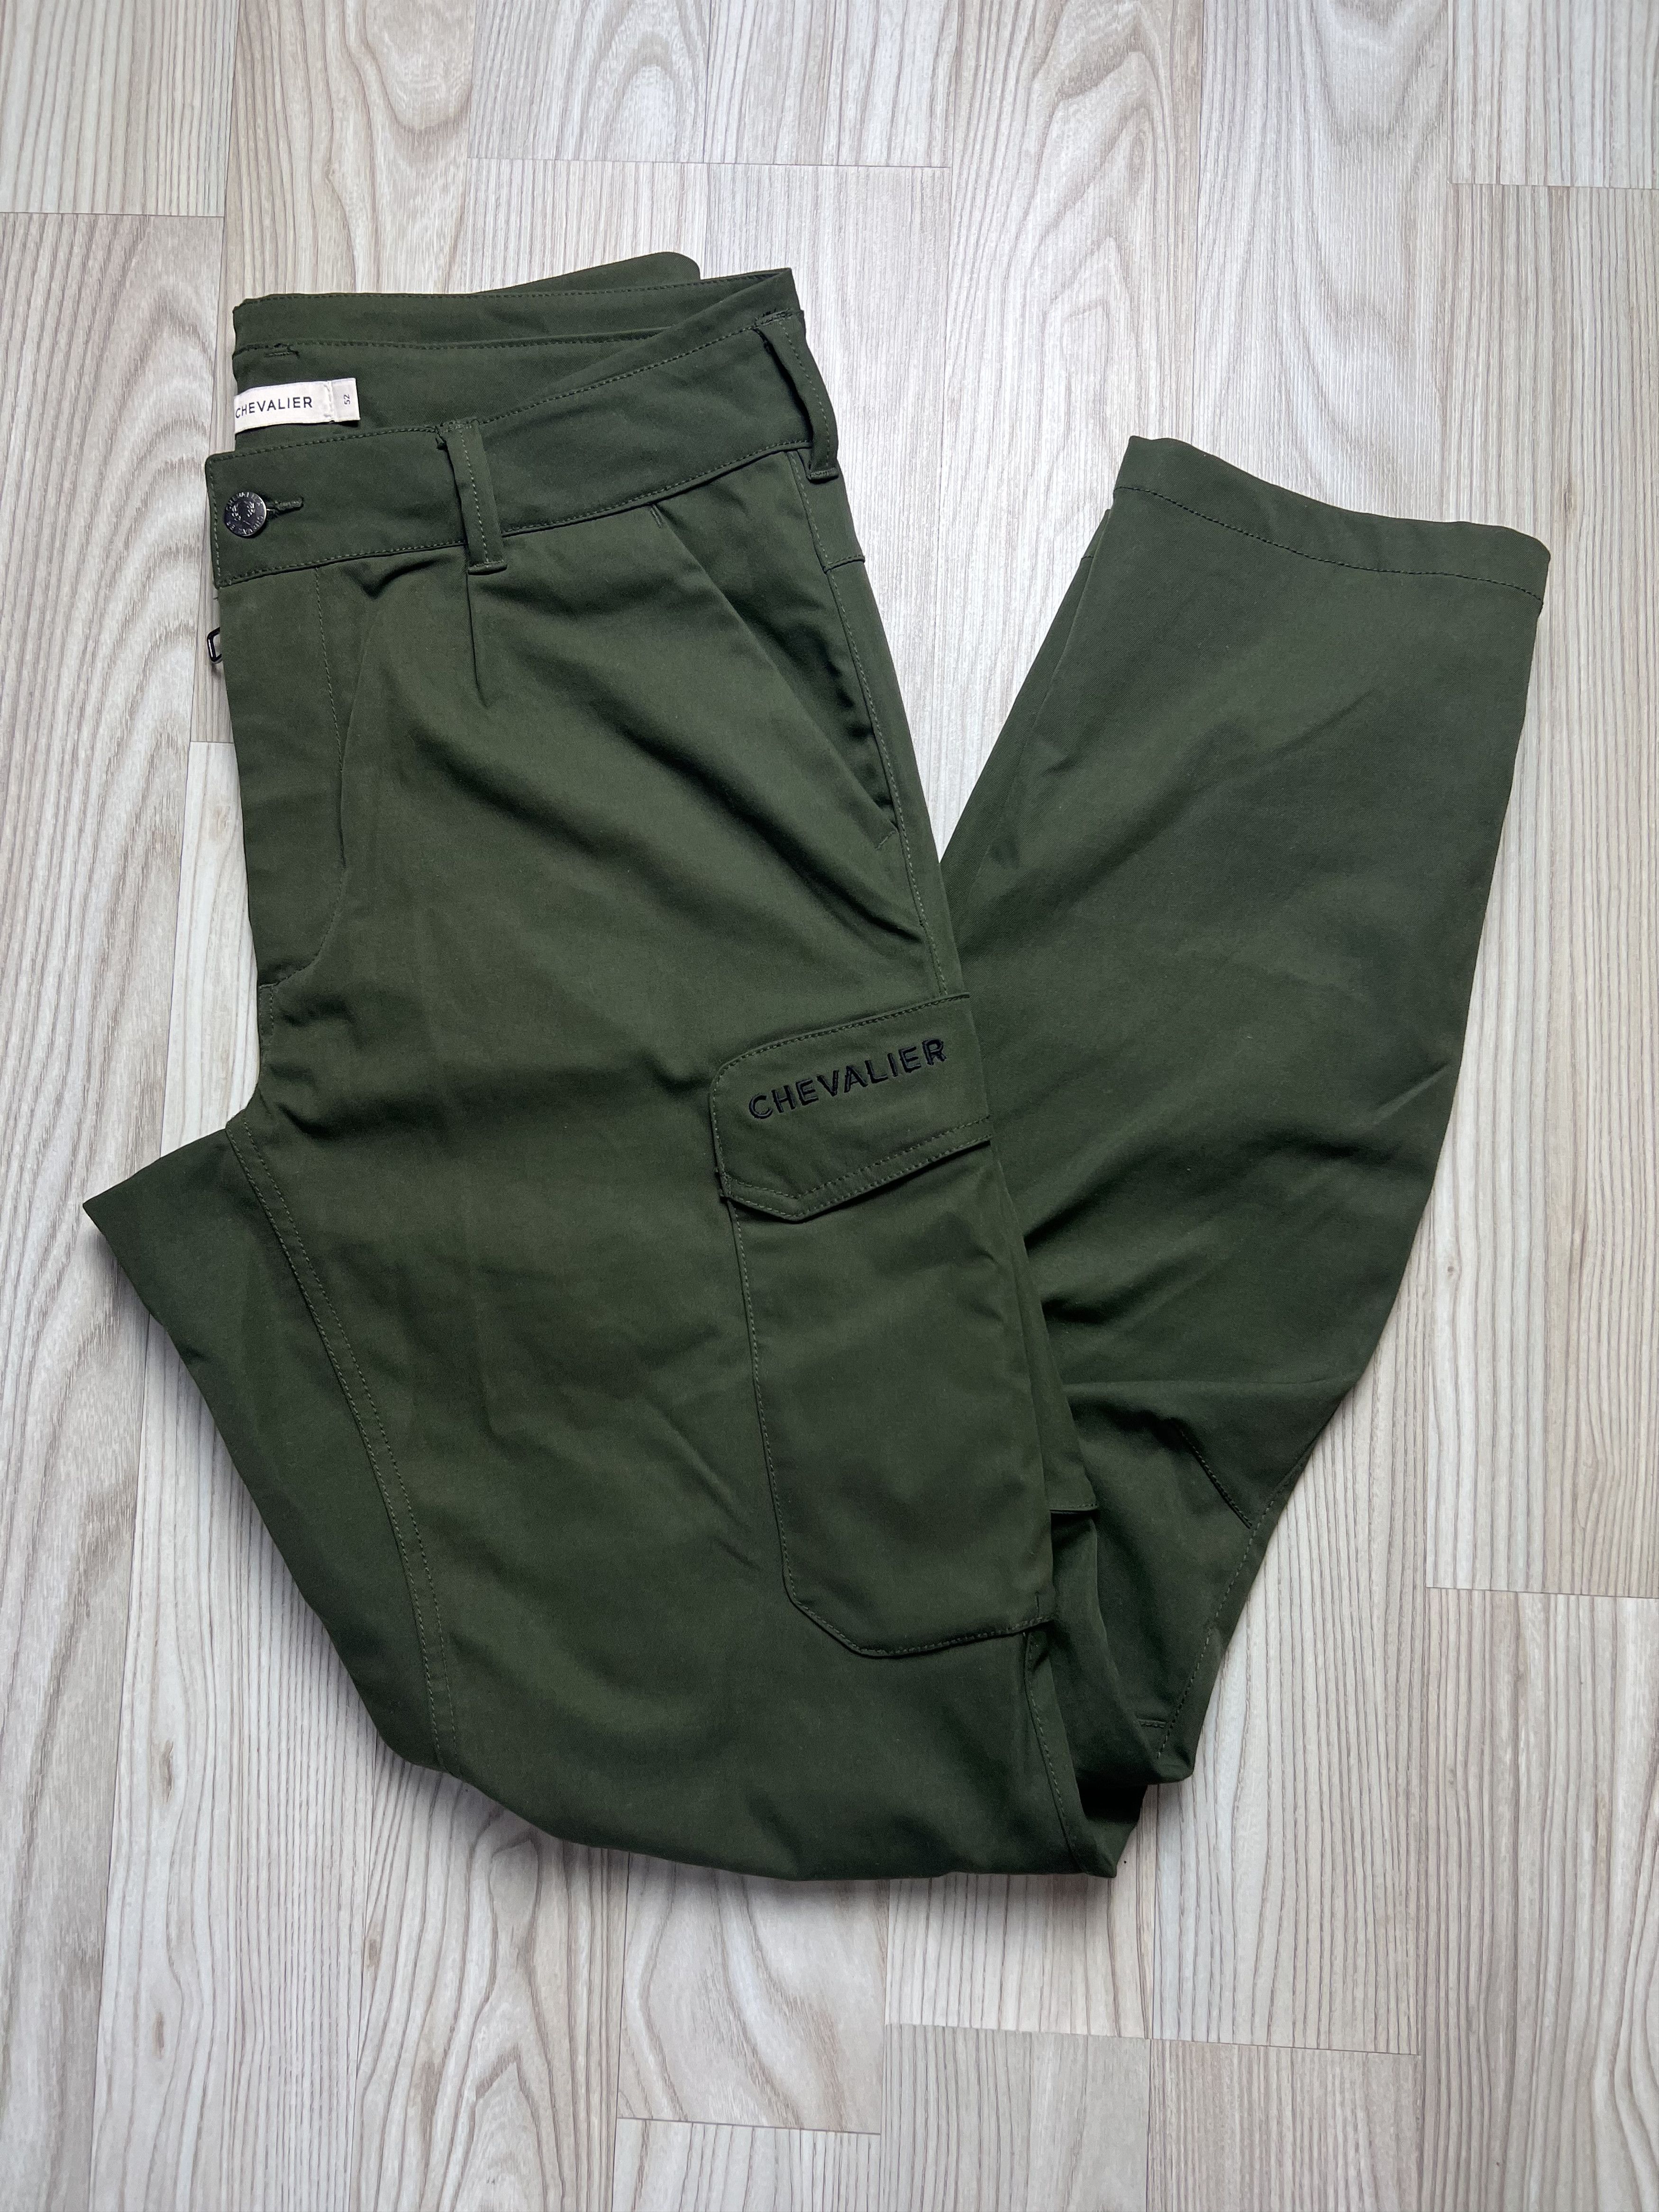 Outdoor pants - Chevalier